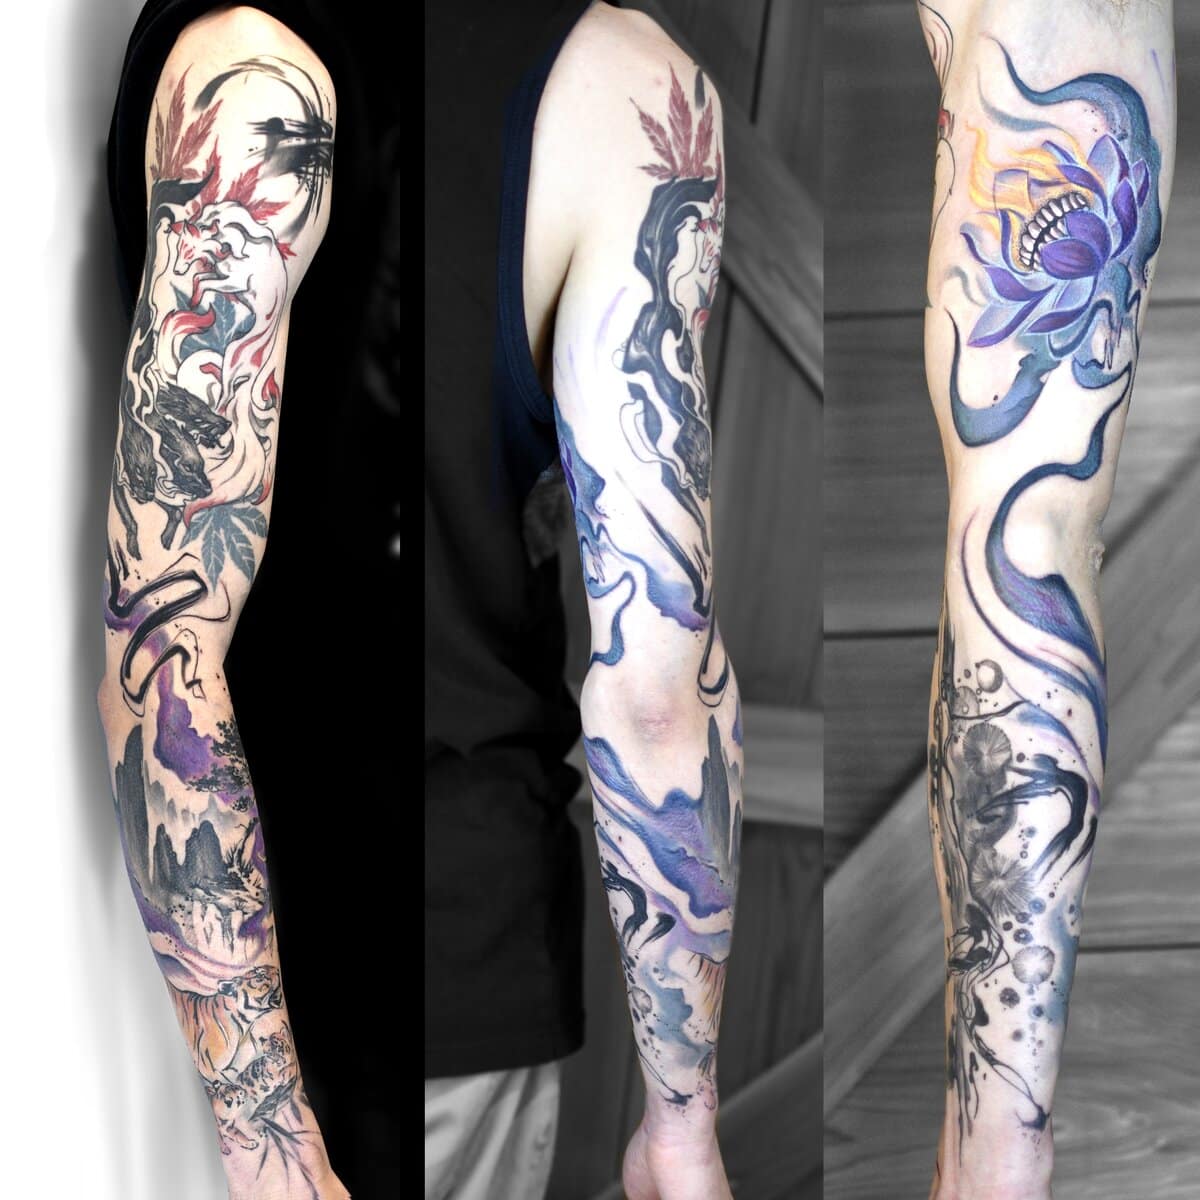 emma-larkin-tattoo-artist-corbin-triplet